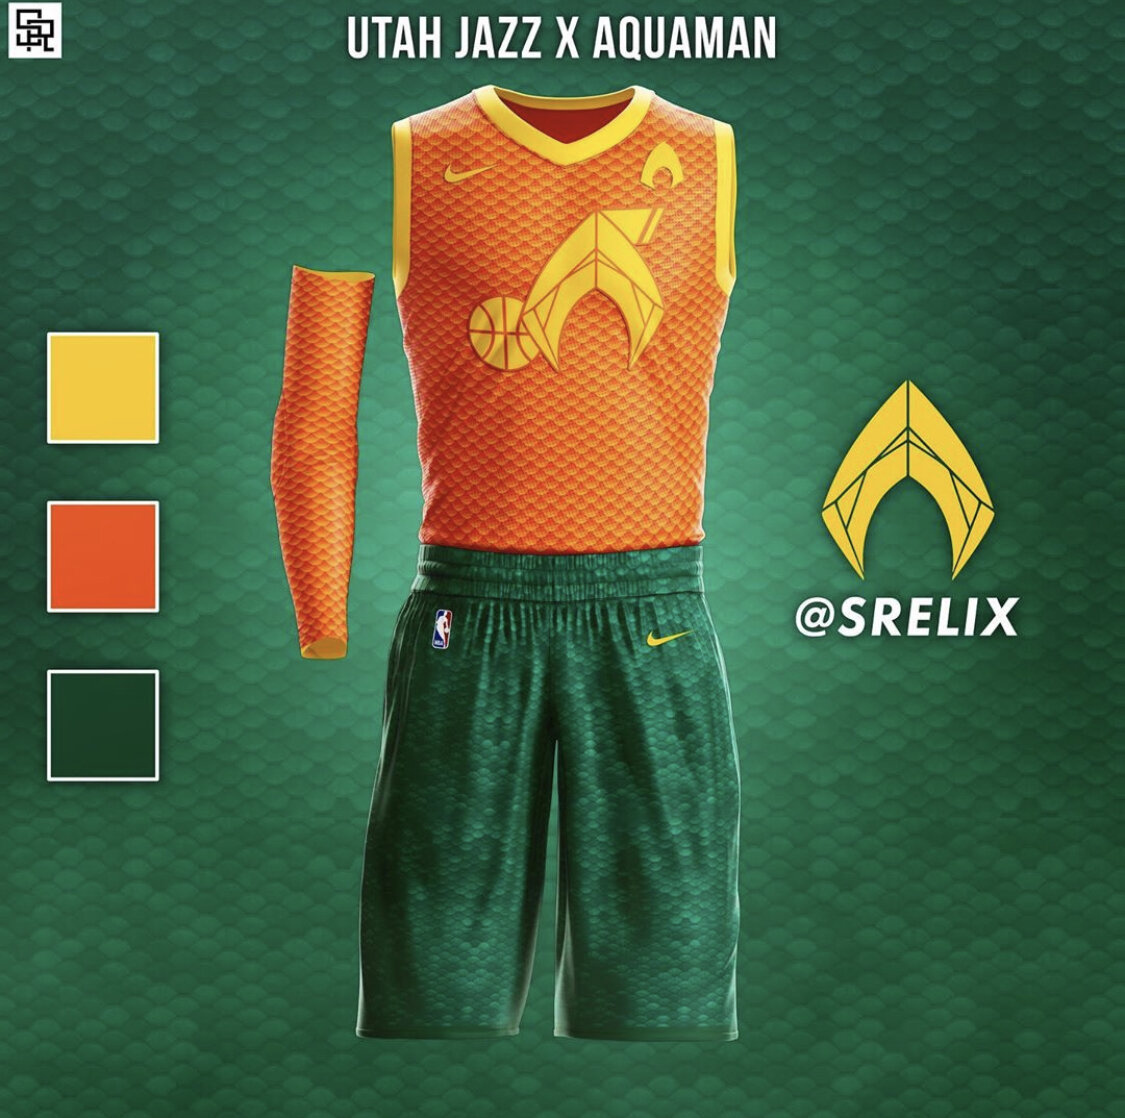 utah jazz concept jersey